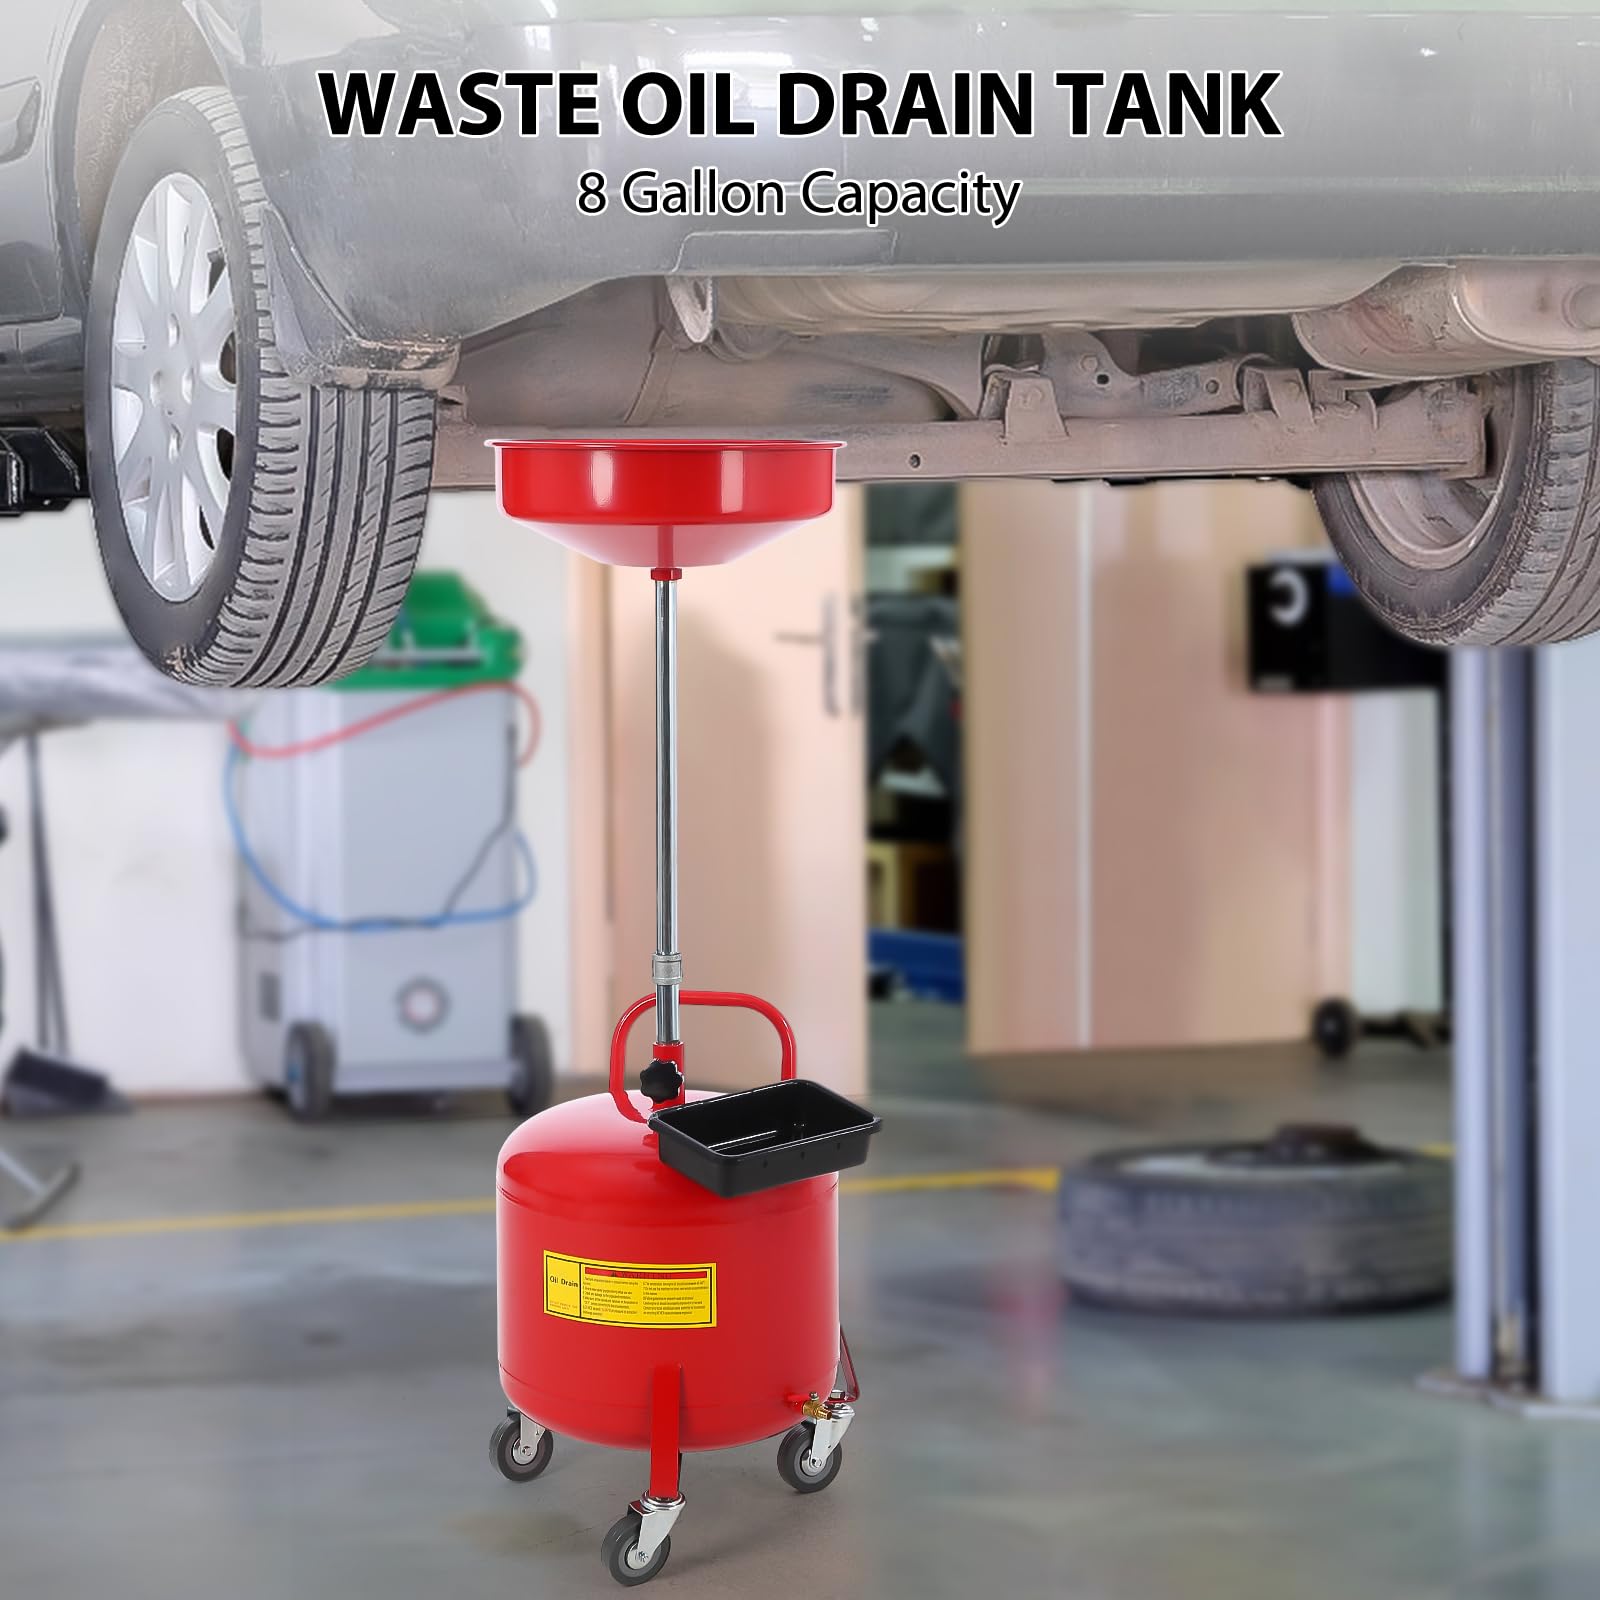 GARVEE 8 Gallon Waste Oil Drain Tank, Air Drain, Funnel, Toolbox, Red